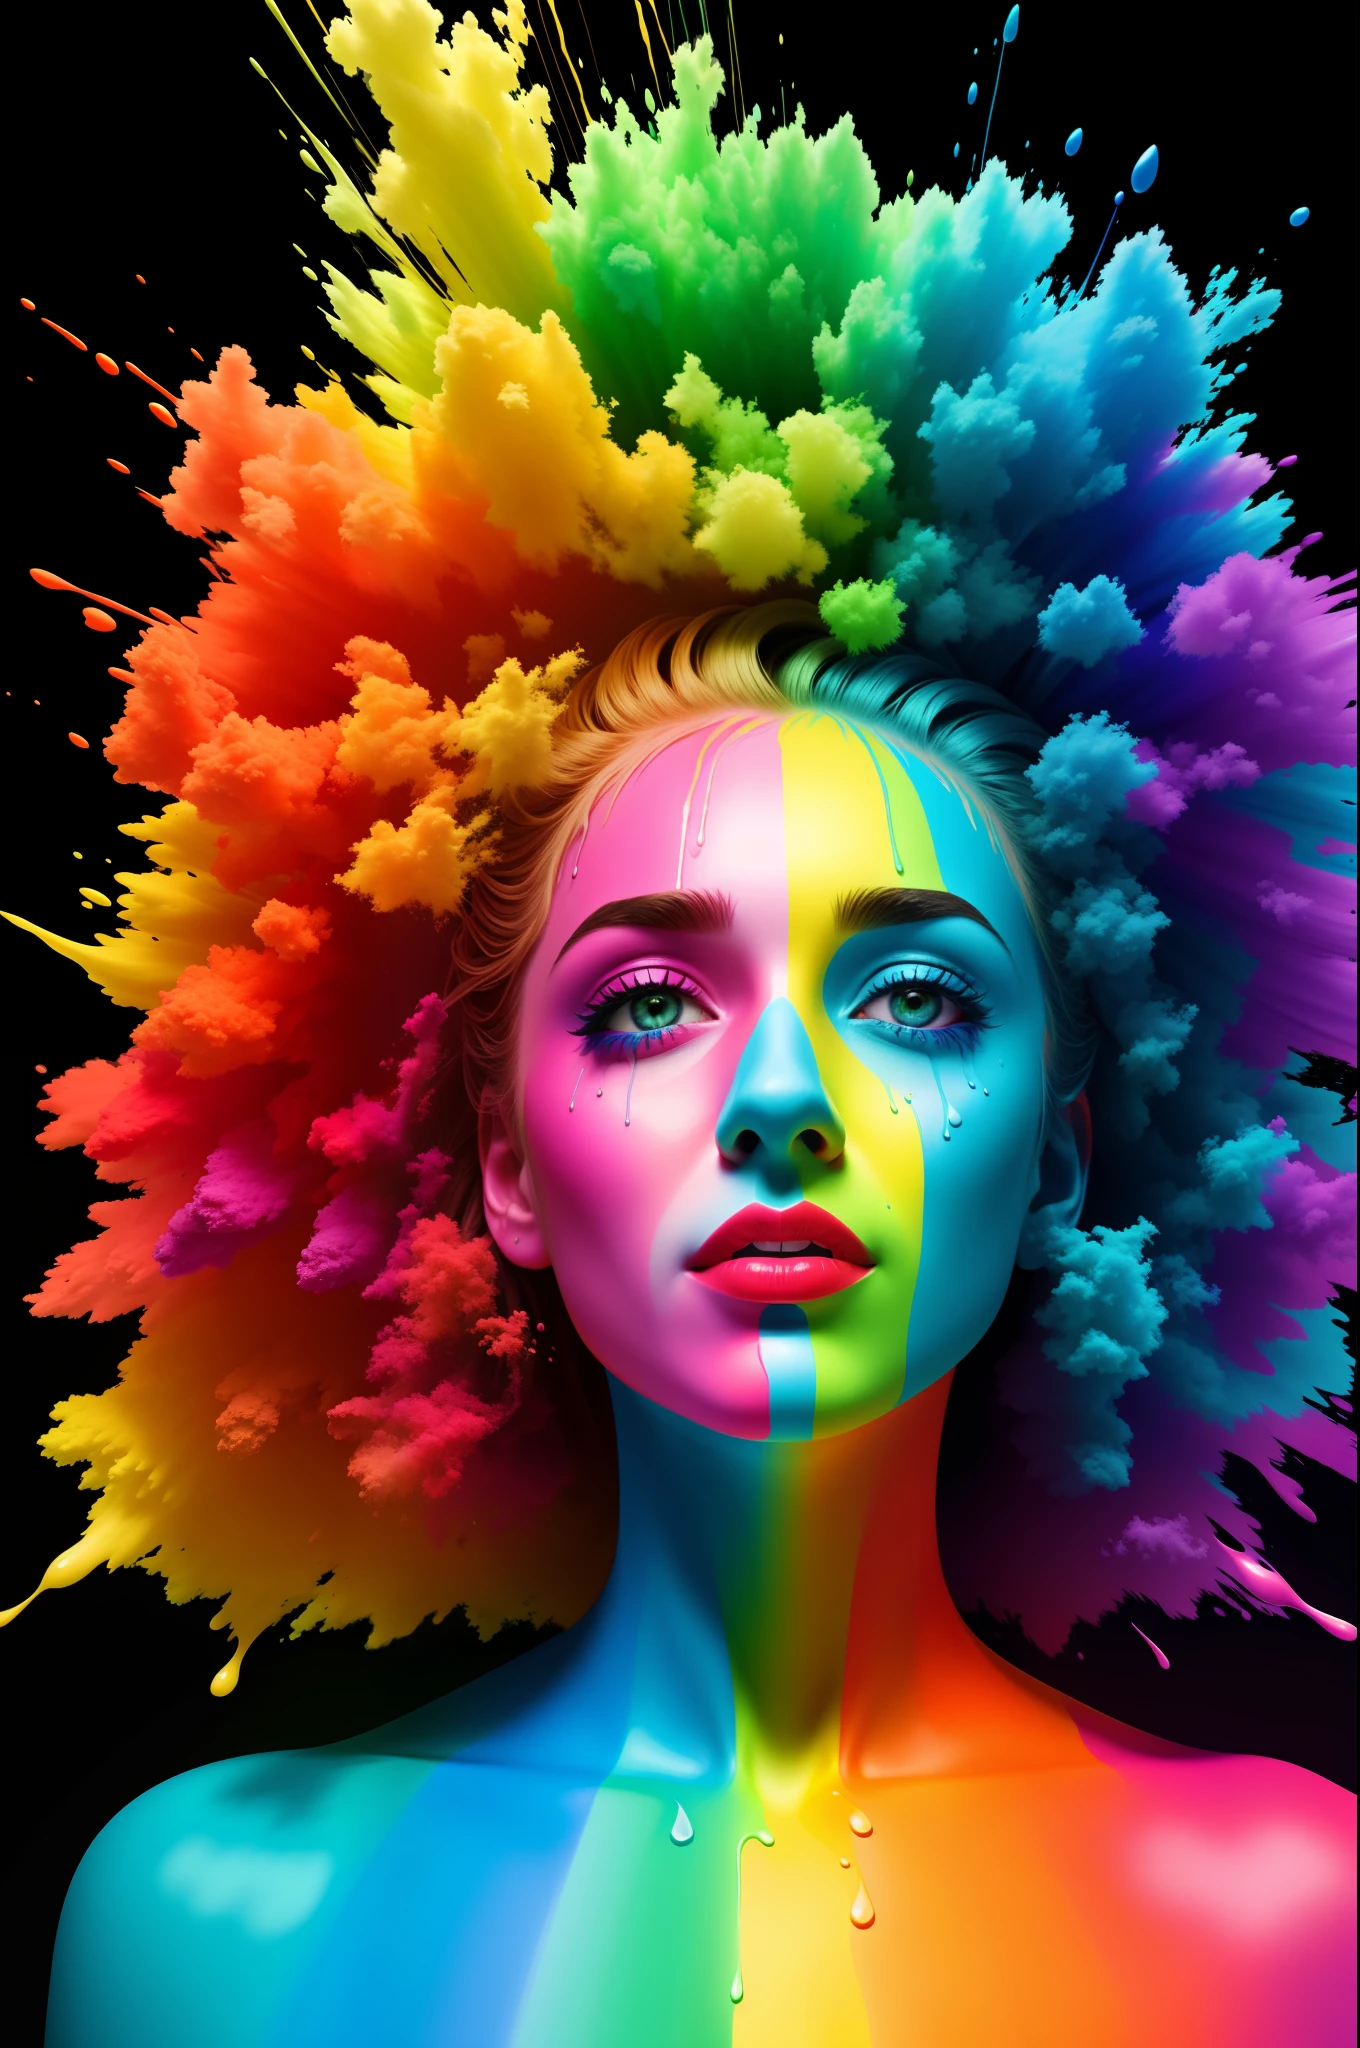 "لن أقضي حياتي في أن أكون لونًا" ملطخة بطلاء بألوان قوس قزح مختلفة, صورة حقيقية مفرطة, تقنية التنقيط, الفتنة pfp, لون 10 بت, تقرير التنمية البشرية, 8 كيلو